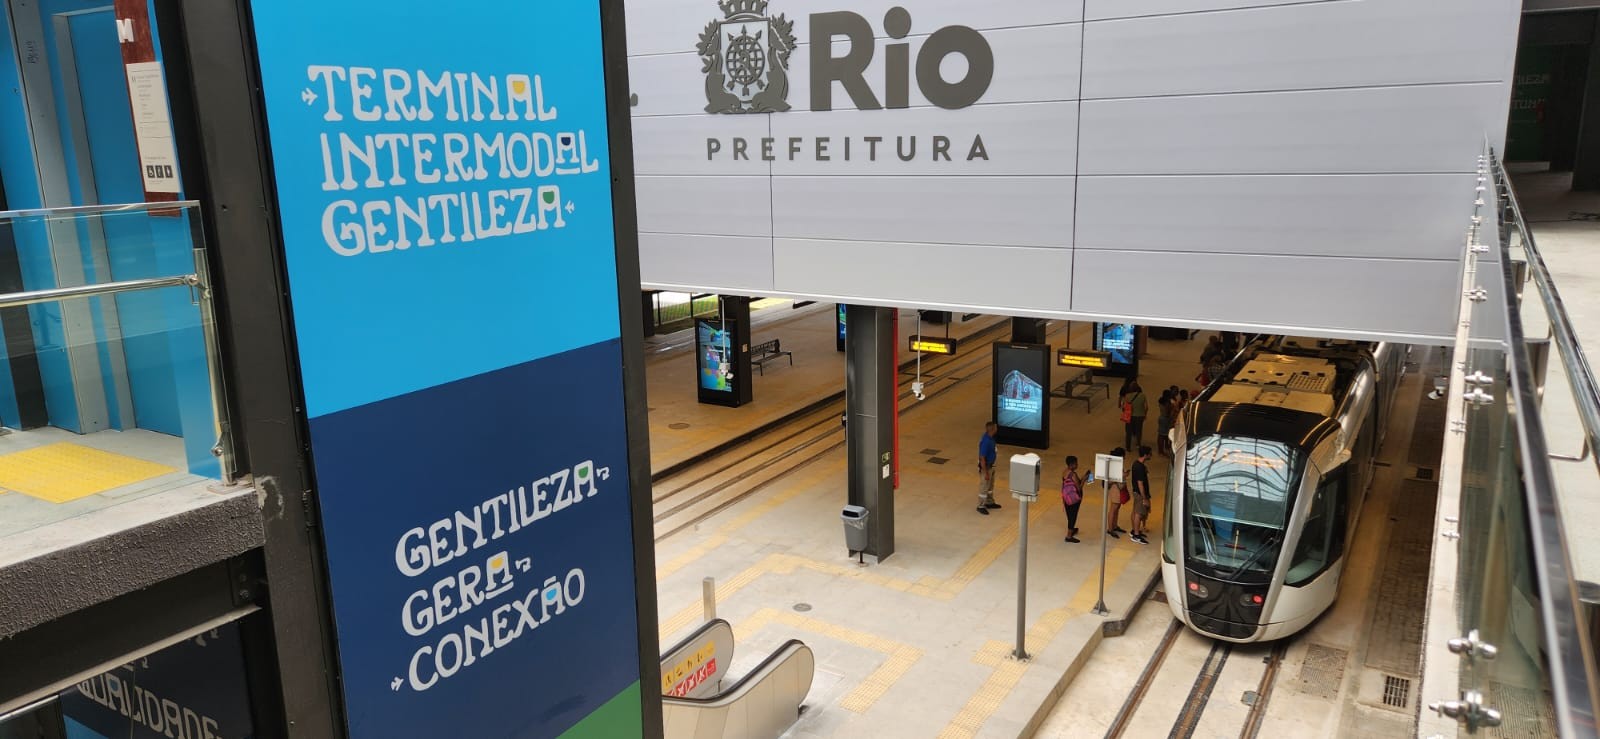 Terminal intermodal Gentileza é inaugurado no Rio de Janeiro — Foto: Custódio Coimbra/Agência O Globo